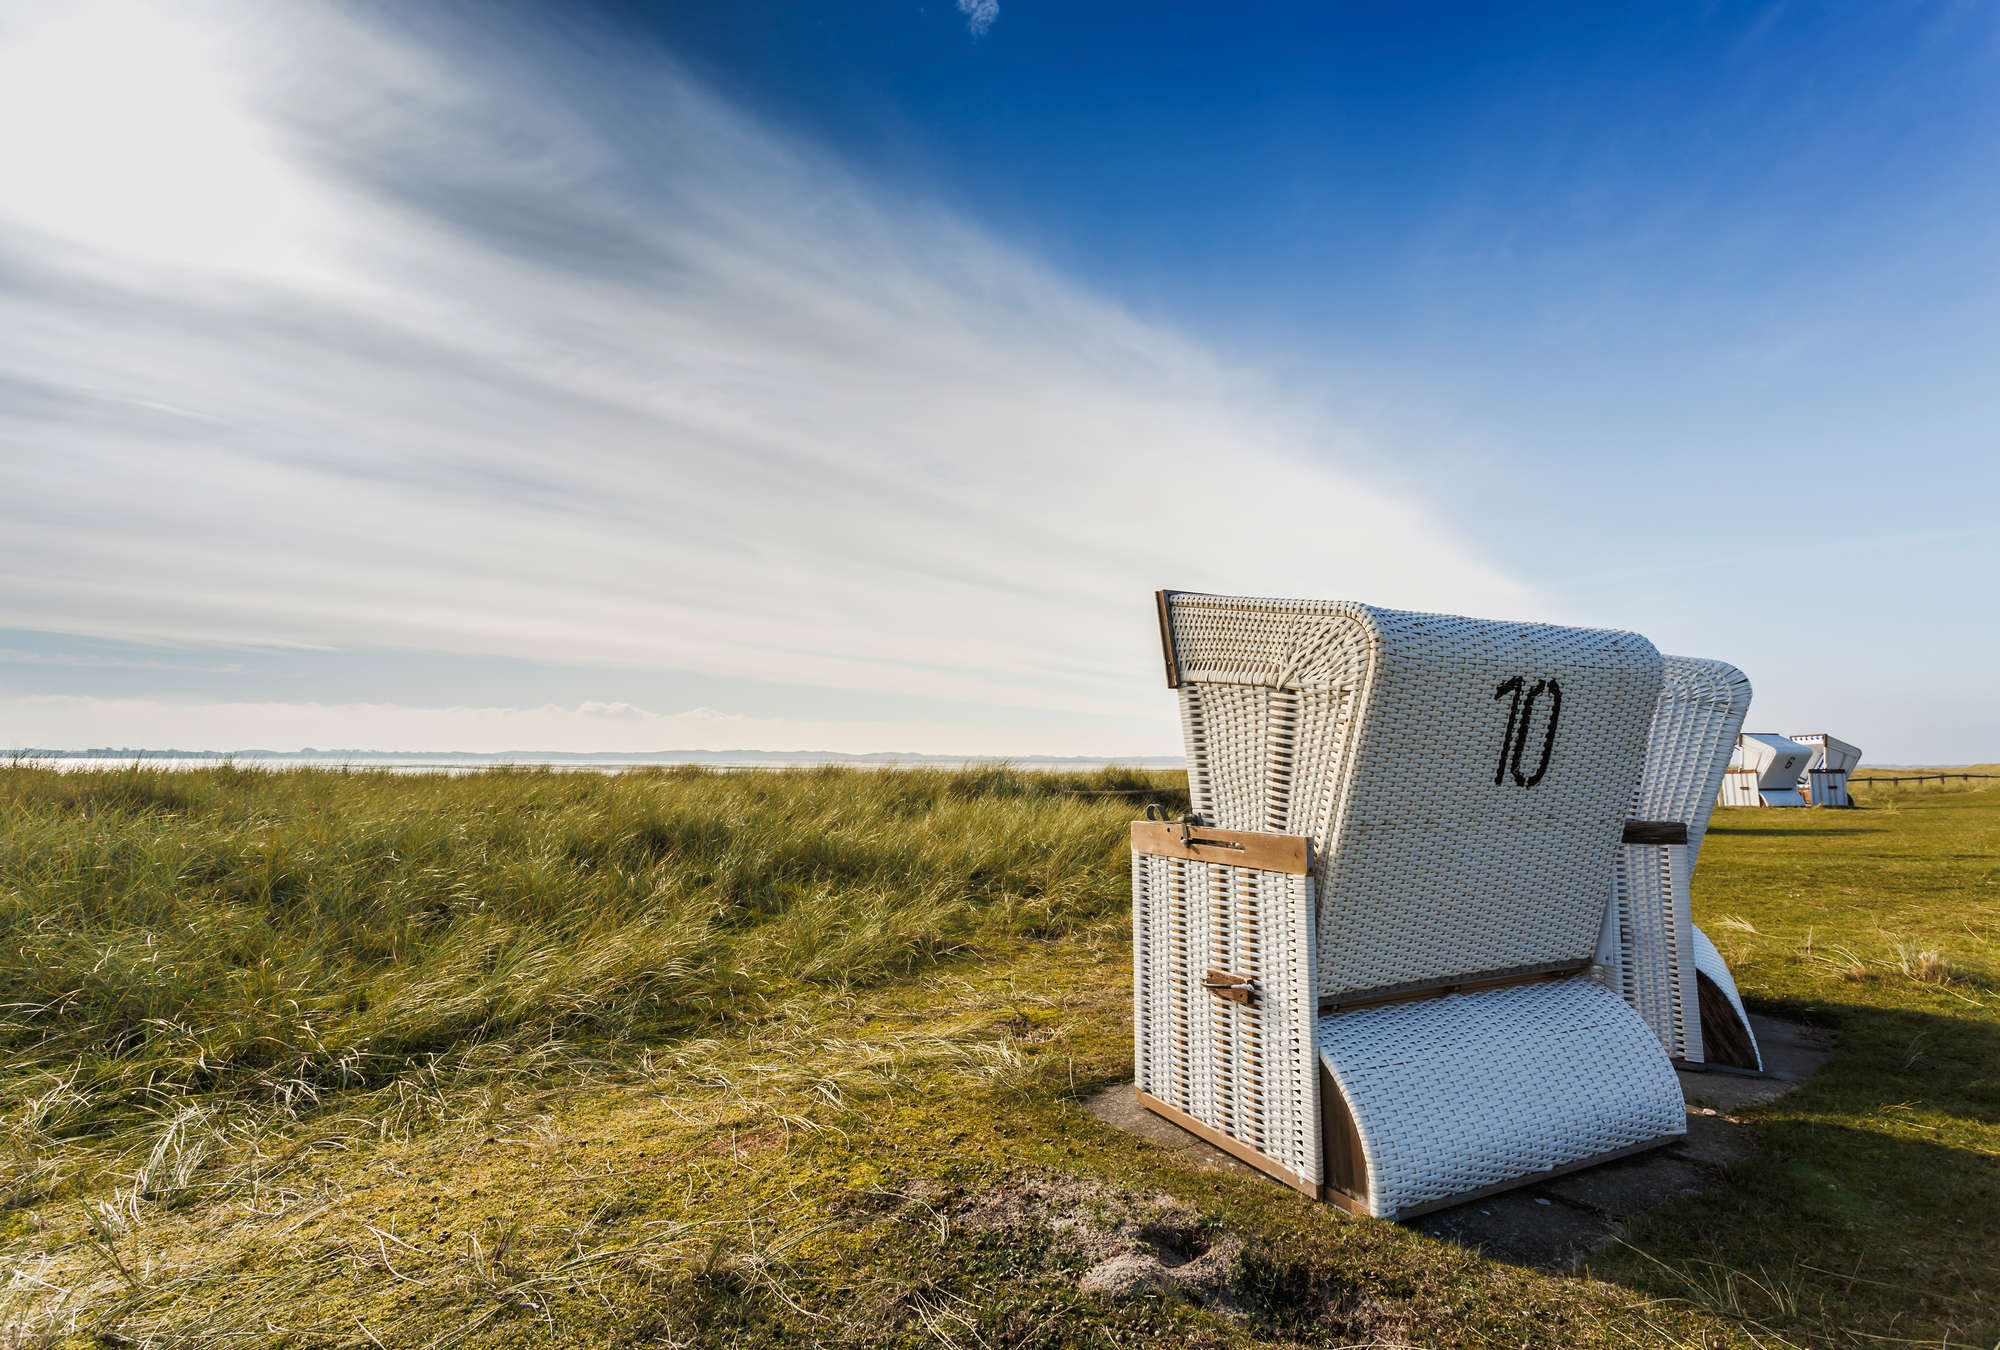             Mural de sillas de playa en las dunas
        